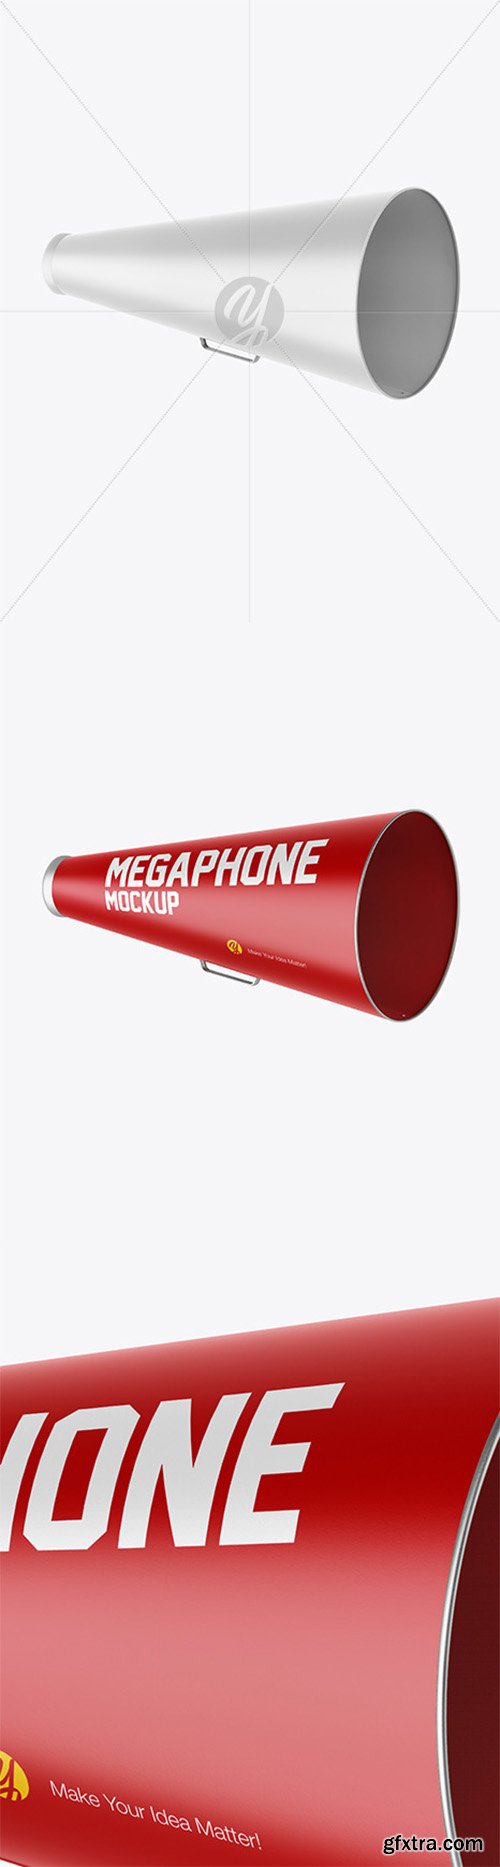 Megaphone Mockup 51777